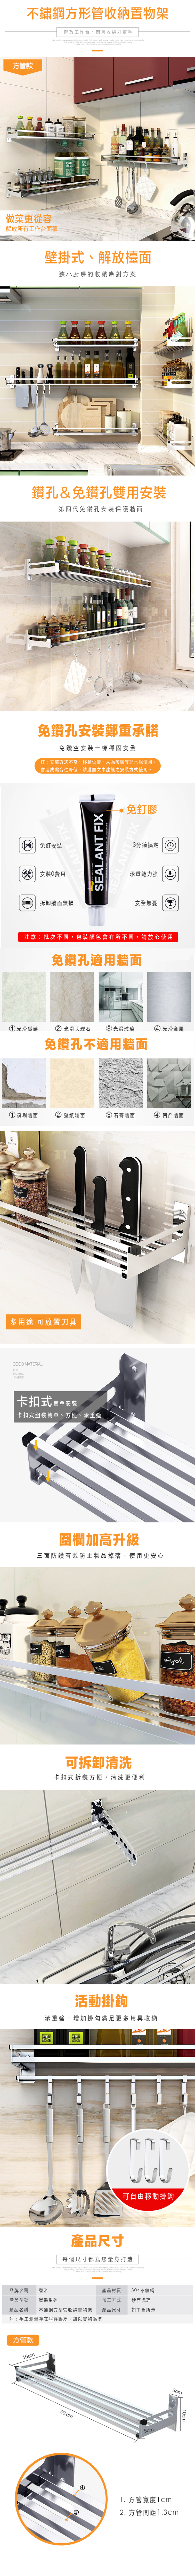 不鏽鋼耐重方形管收納置物架(不鏽鋼收納置物架/廚房收納架